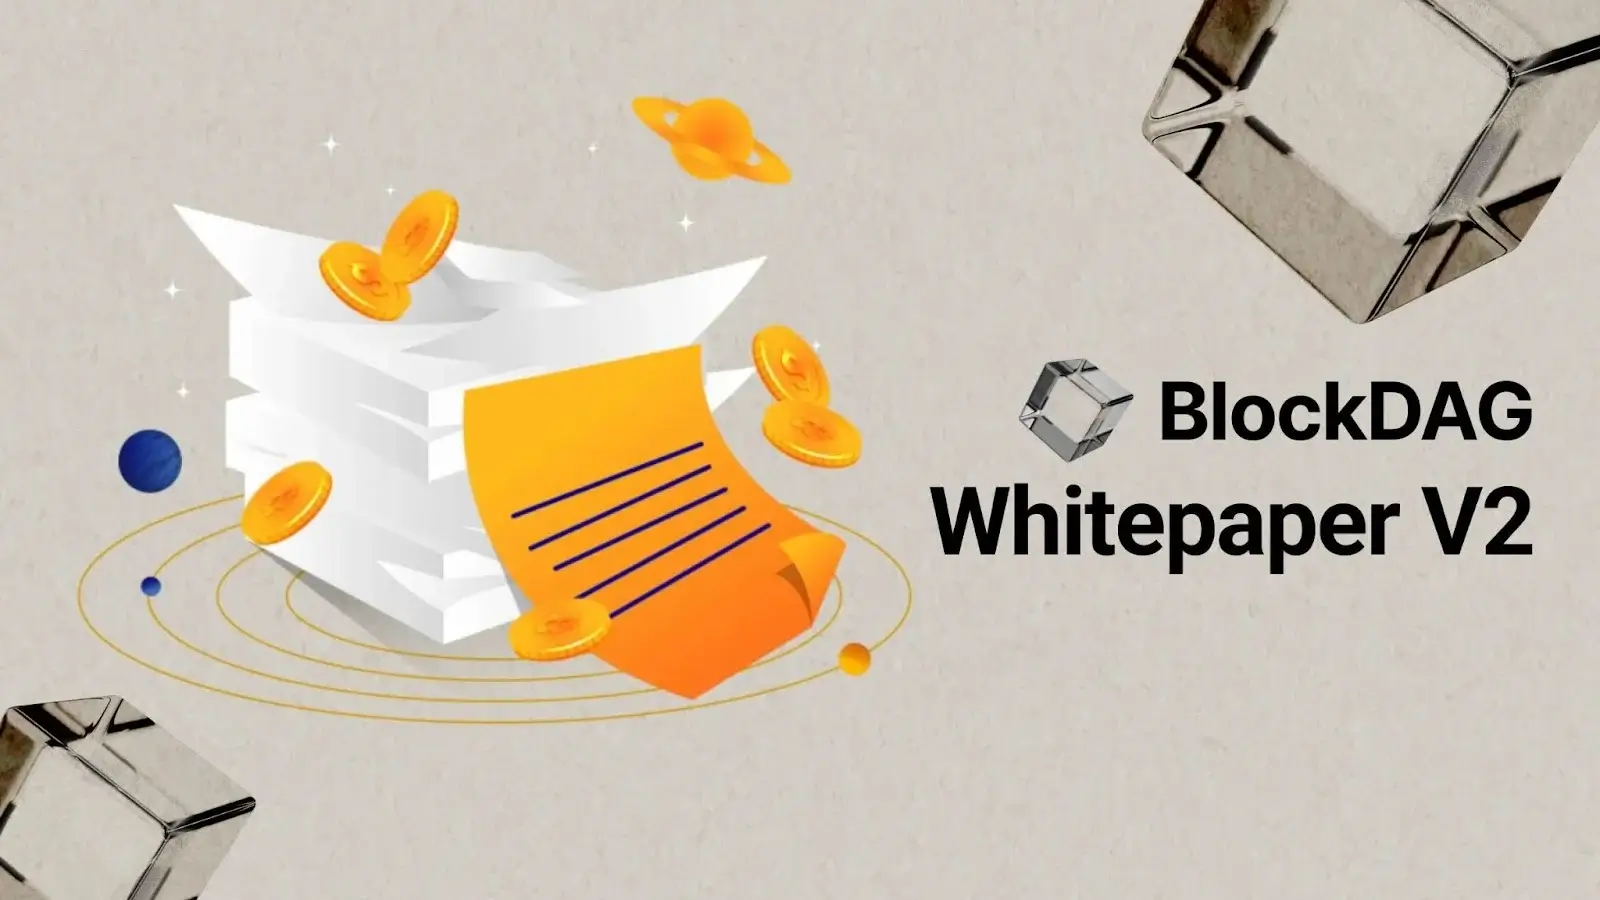 BlockDAG Whitepaper V2